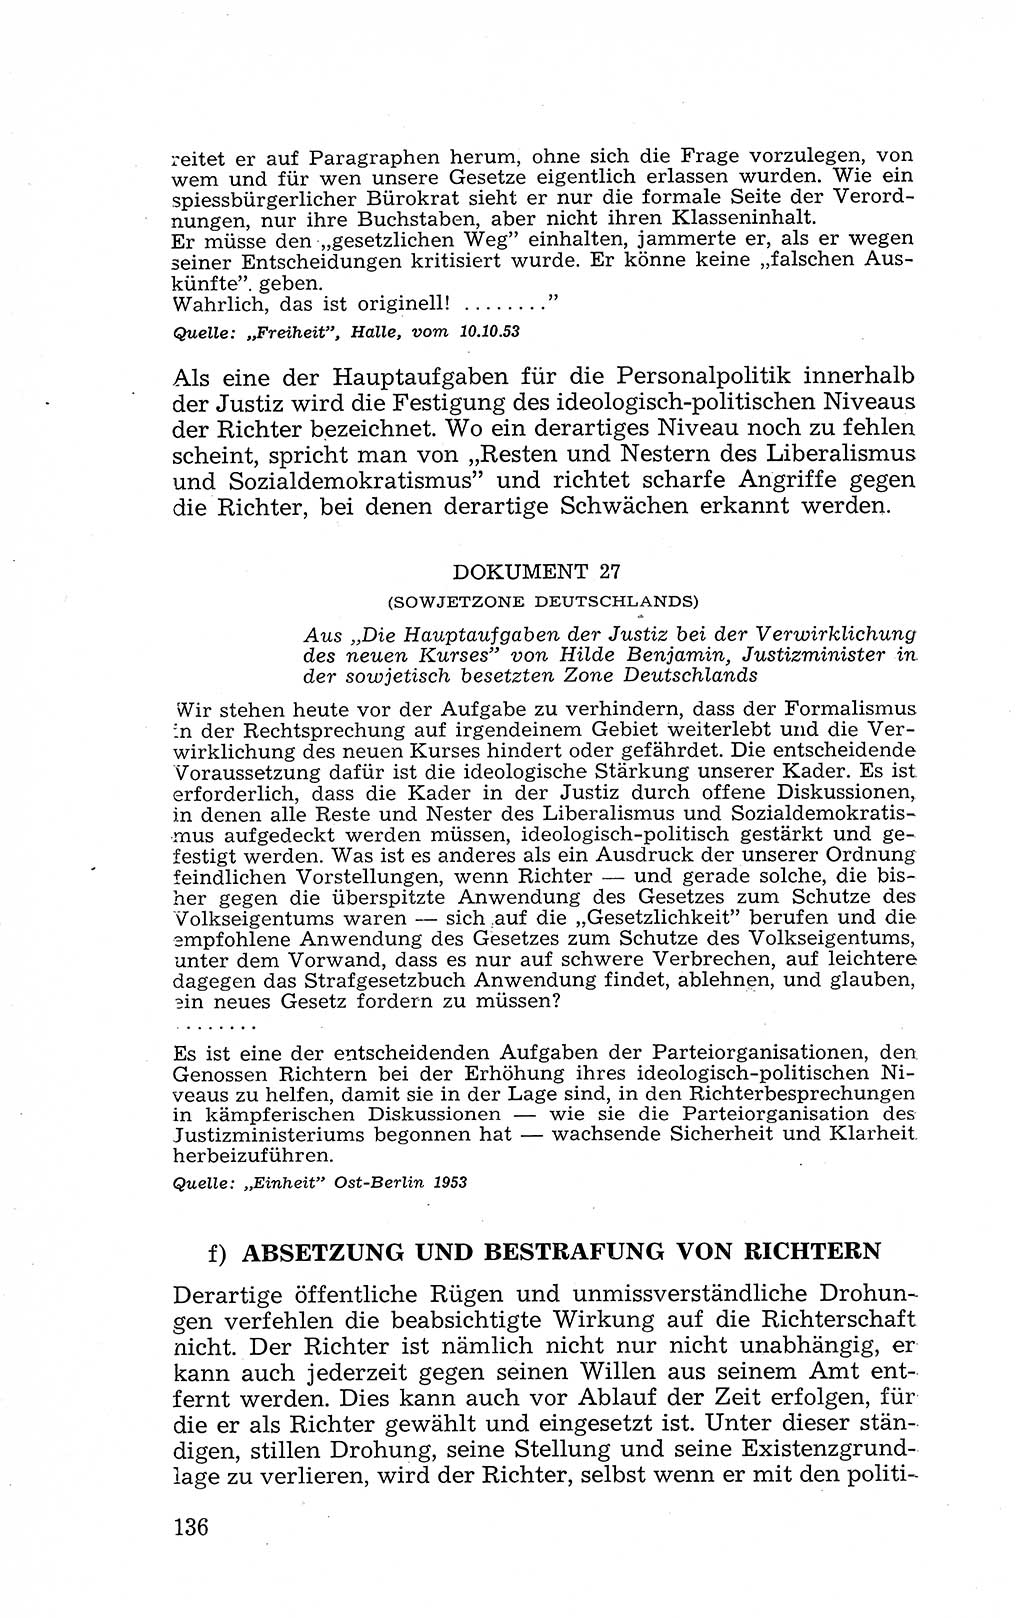 Recht in Fesseln, Dokumente, Internationale Juristen-Kommission [Bundesrepublik Deutschland (BRD)] 1955, Seite 136 (R. Dok. IJK BRD 1955, S. 136)